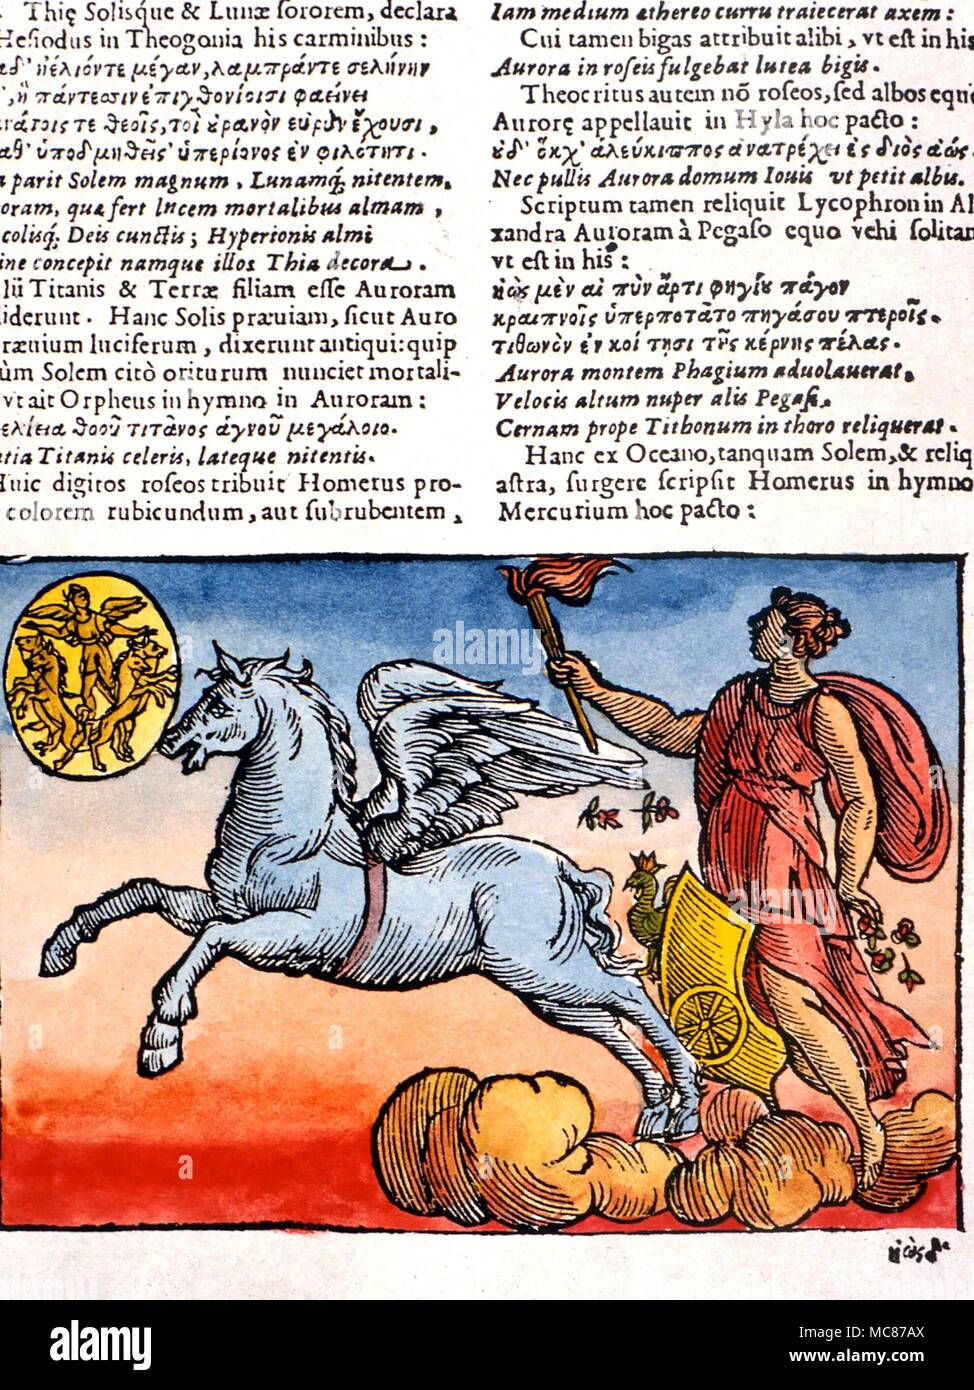 El caballo alado Pegaso, Pegasus, dibujo del carro del amanecer, o la Aurora. Desde el siglo XVII 'Mythologiae' de Comitis Foto de stock